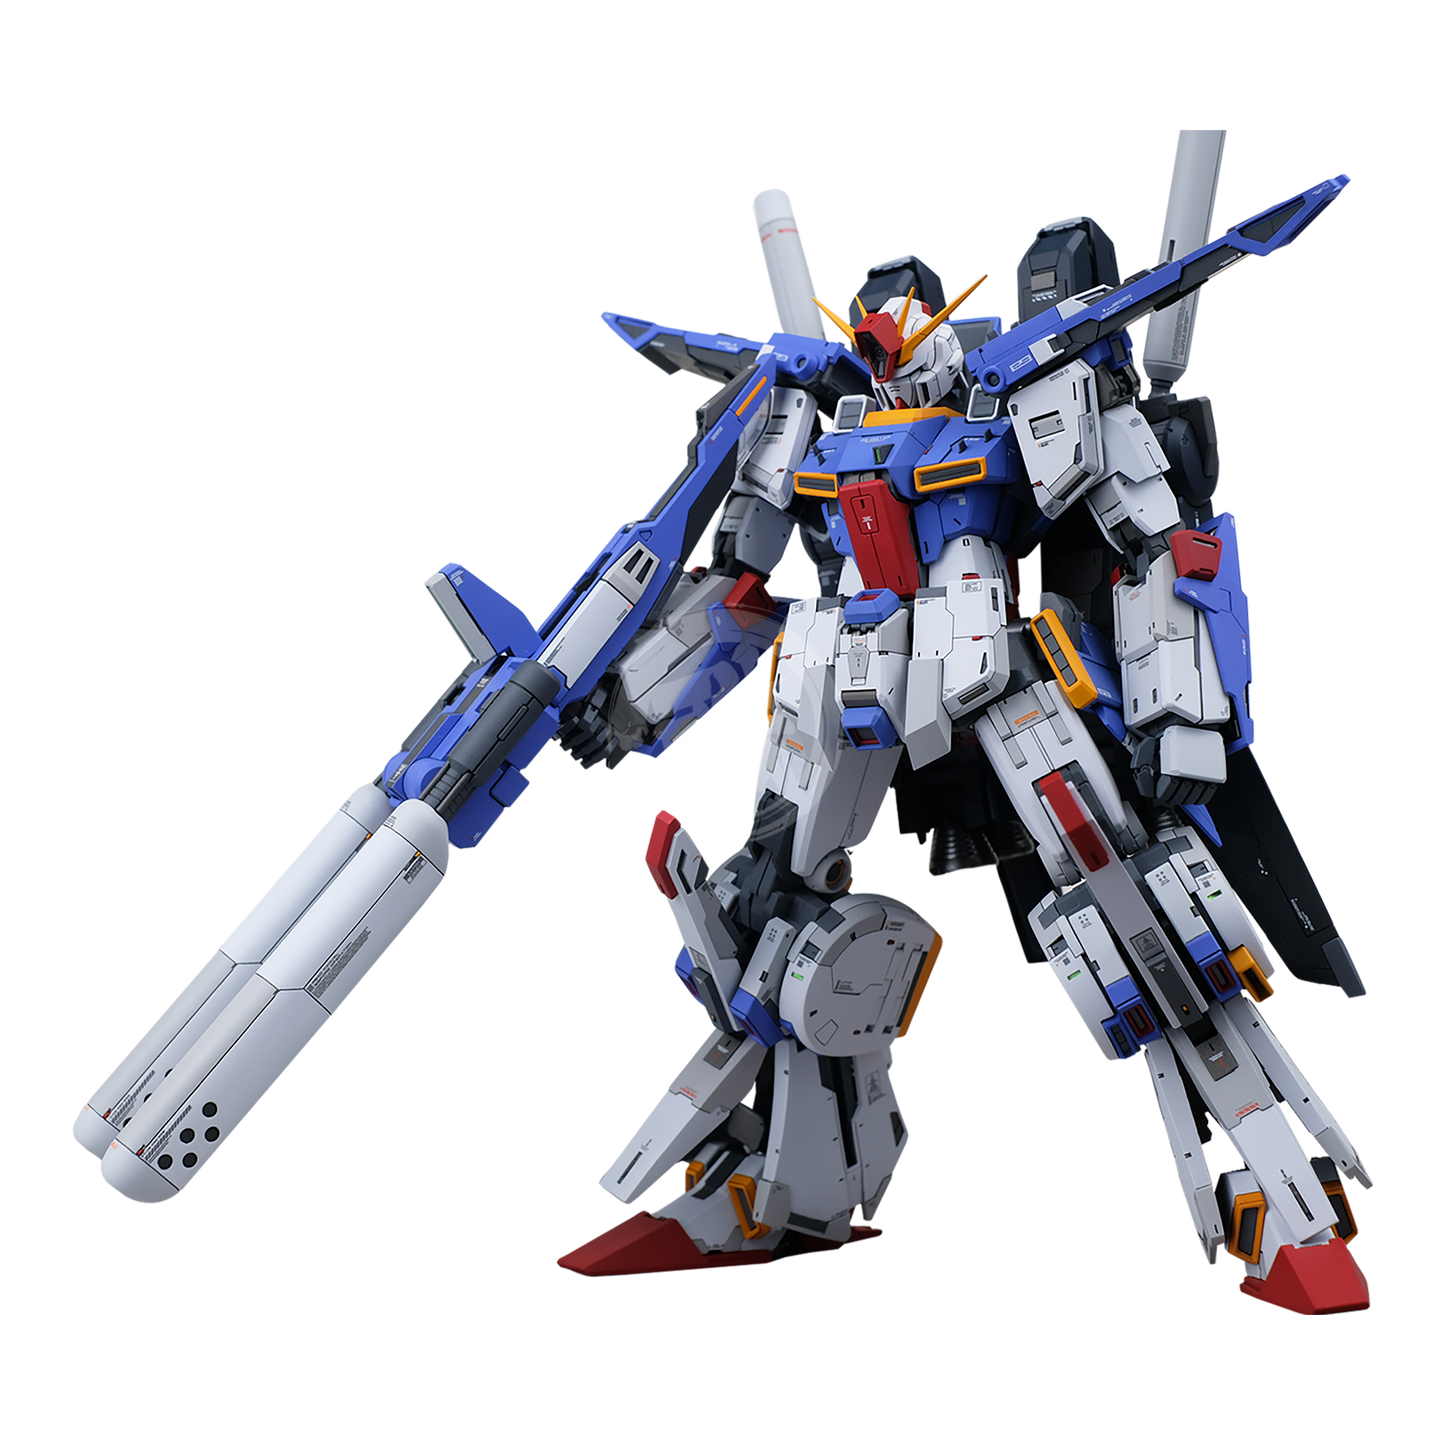 Friday Bad Guy - MG Double Zeta Gundam Resin Conversion Kit [Preorder Q1 2024] - ShokuninGunpla